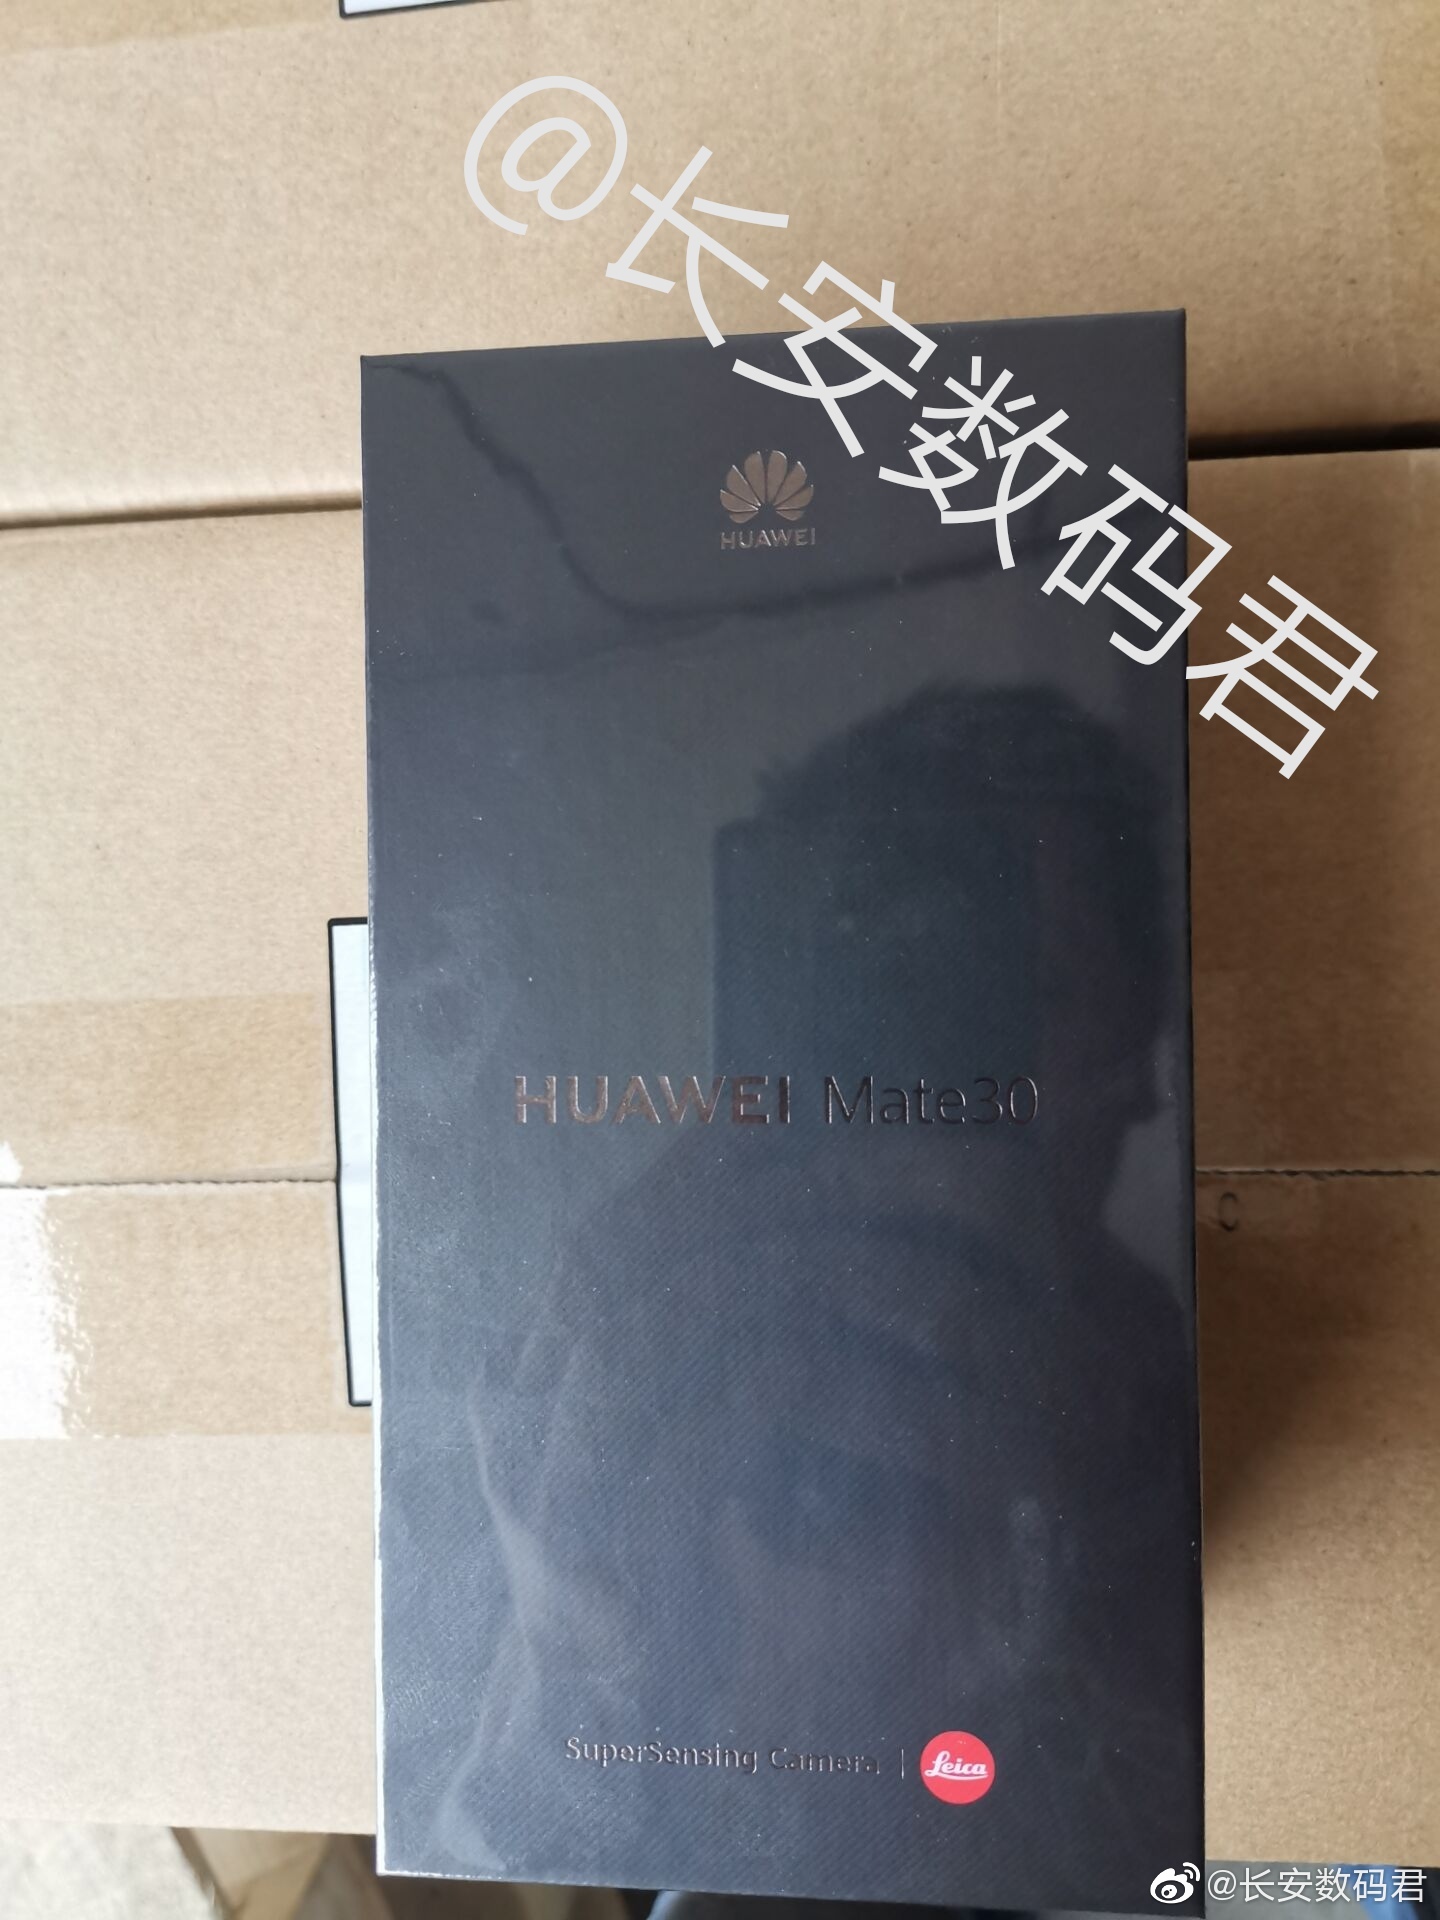 Huawei Mate 30 zdjęcia opakowania plotki przecieki wycieki specyfikacja techniczna kiedy premiera